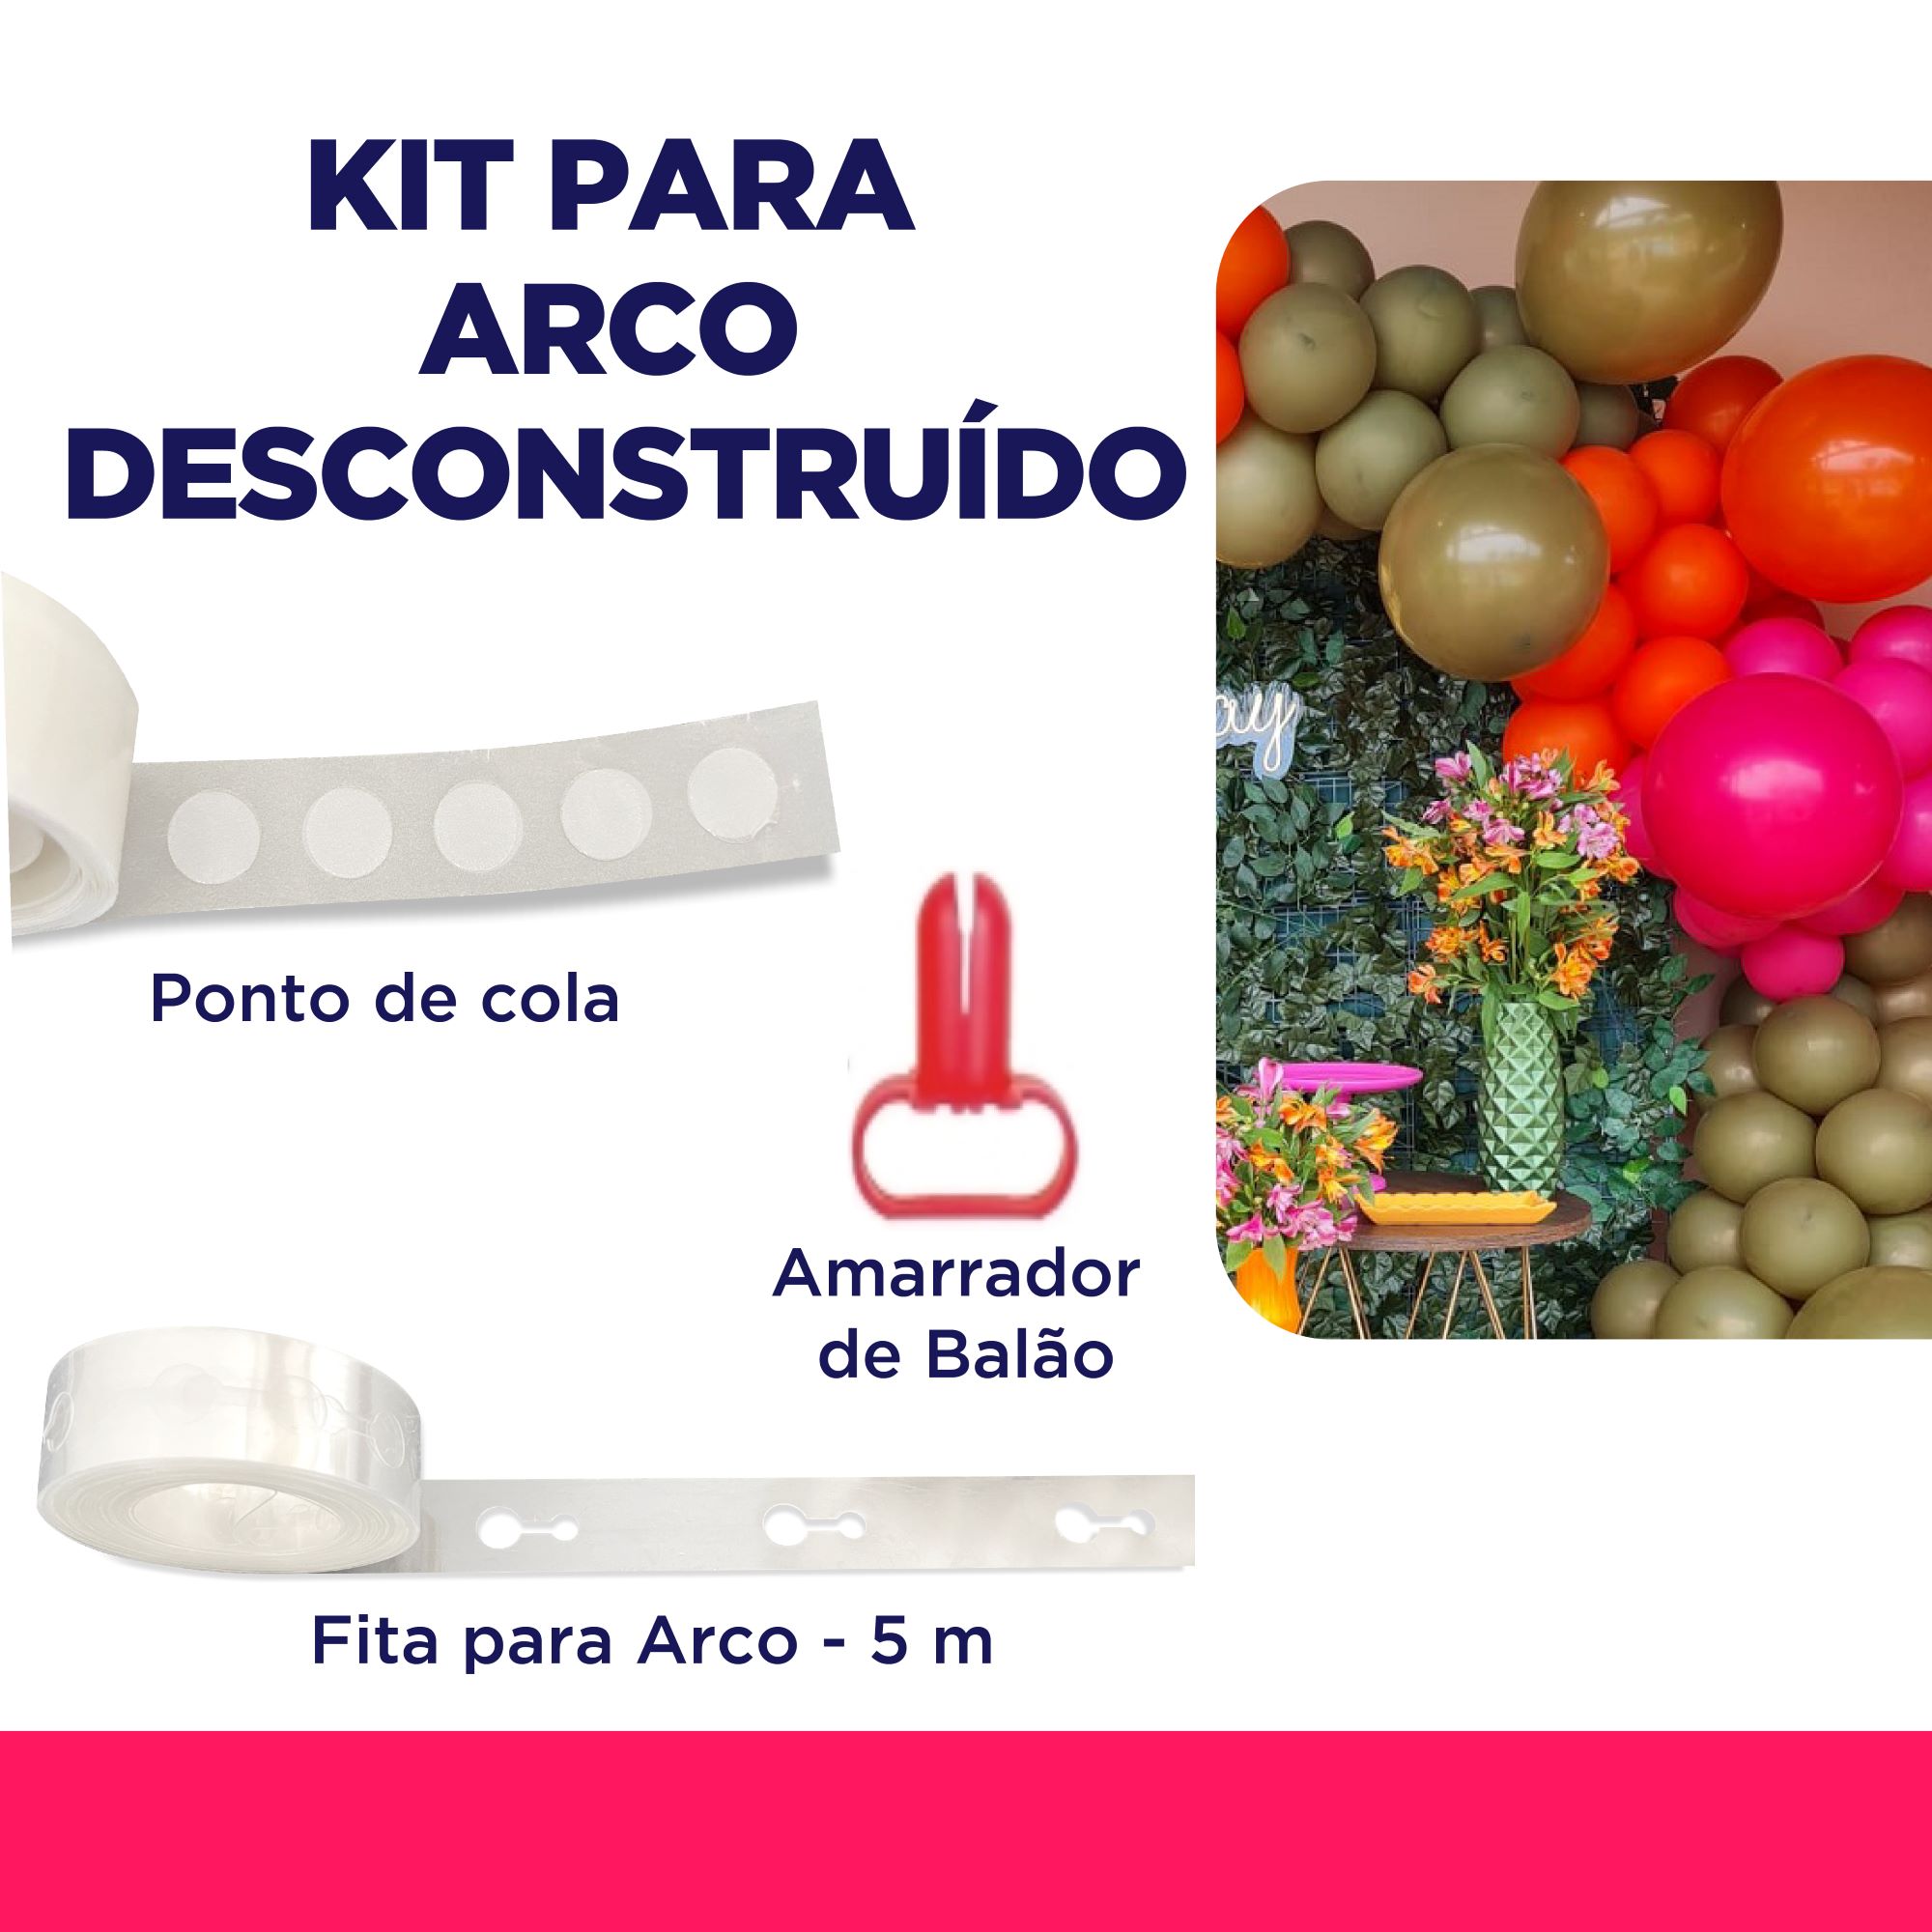 Kit Arco Desconstruído: Ponto de cola  + Fita para Arco + Amarrador de Balão - Festaria Distribuidora